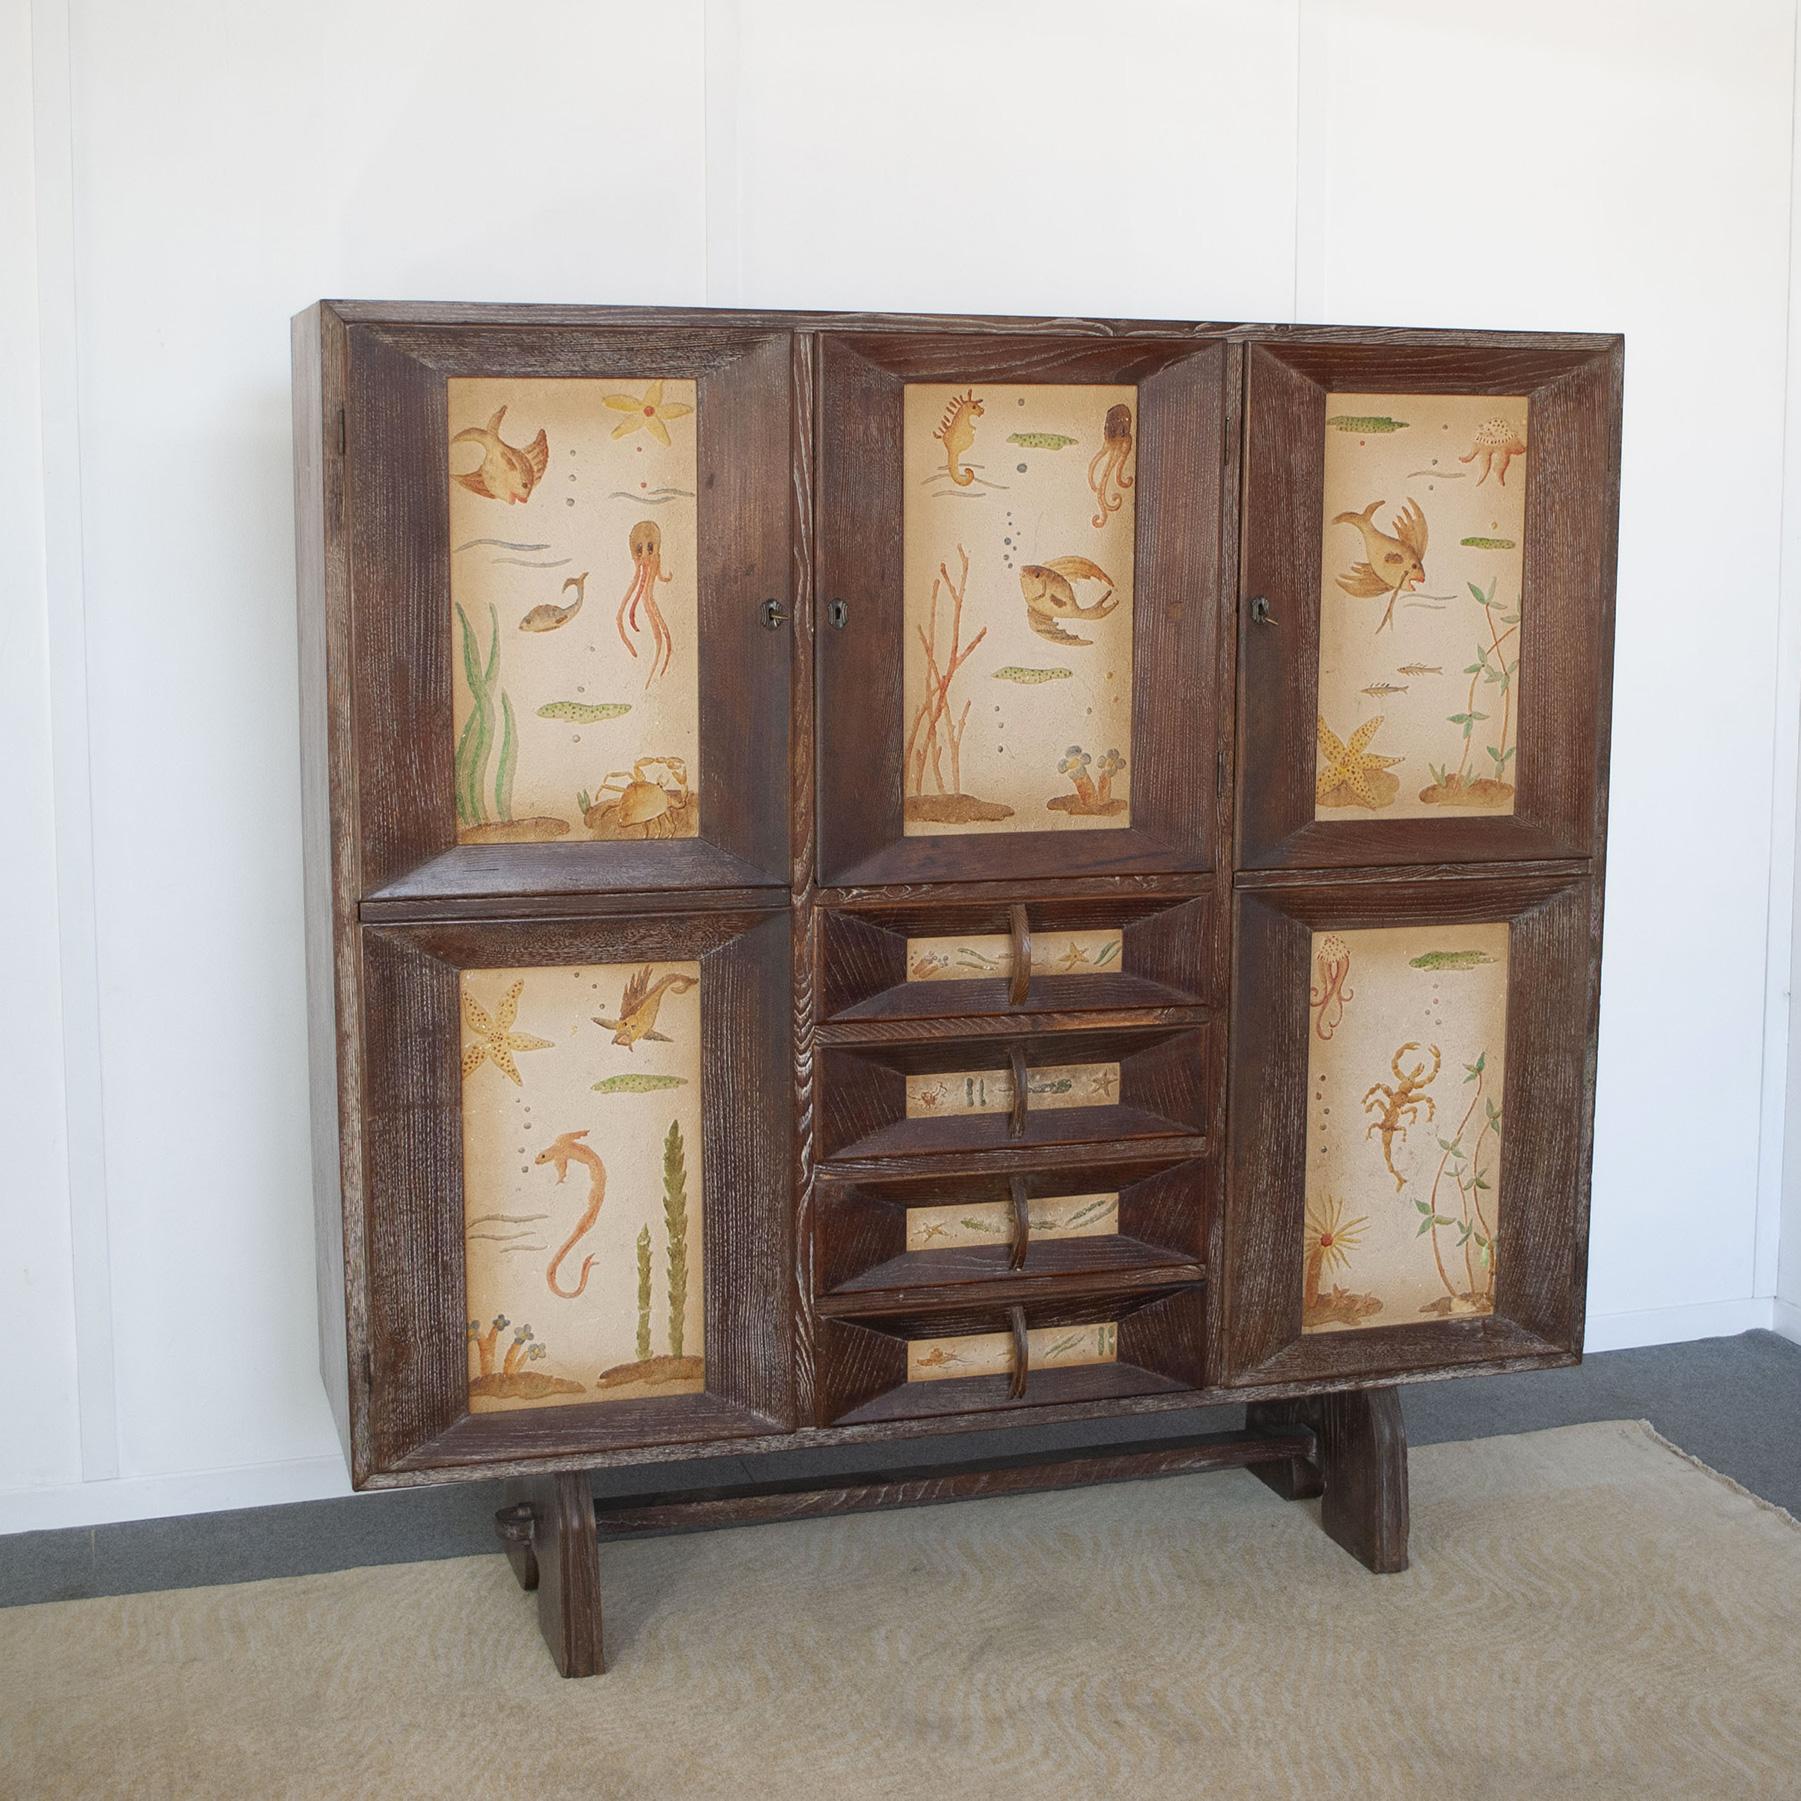 Paolo Buffa  Schrank aus Buchenholz mit drei  abschließbare Türen und vier Schubladen. Die Türen und Schubladen sind mit Reliefs aus der Meereswelt verziert. Dassi-Produktion Ende der 1940er Jahre.